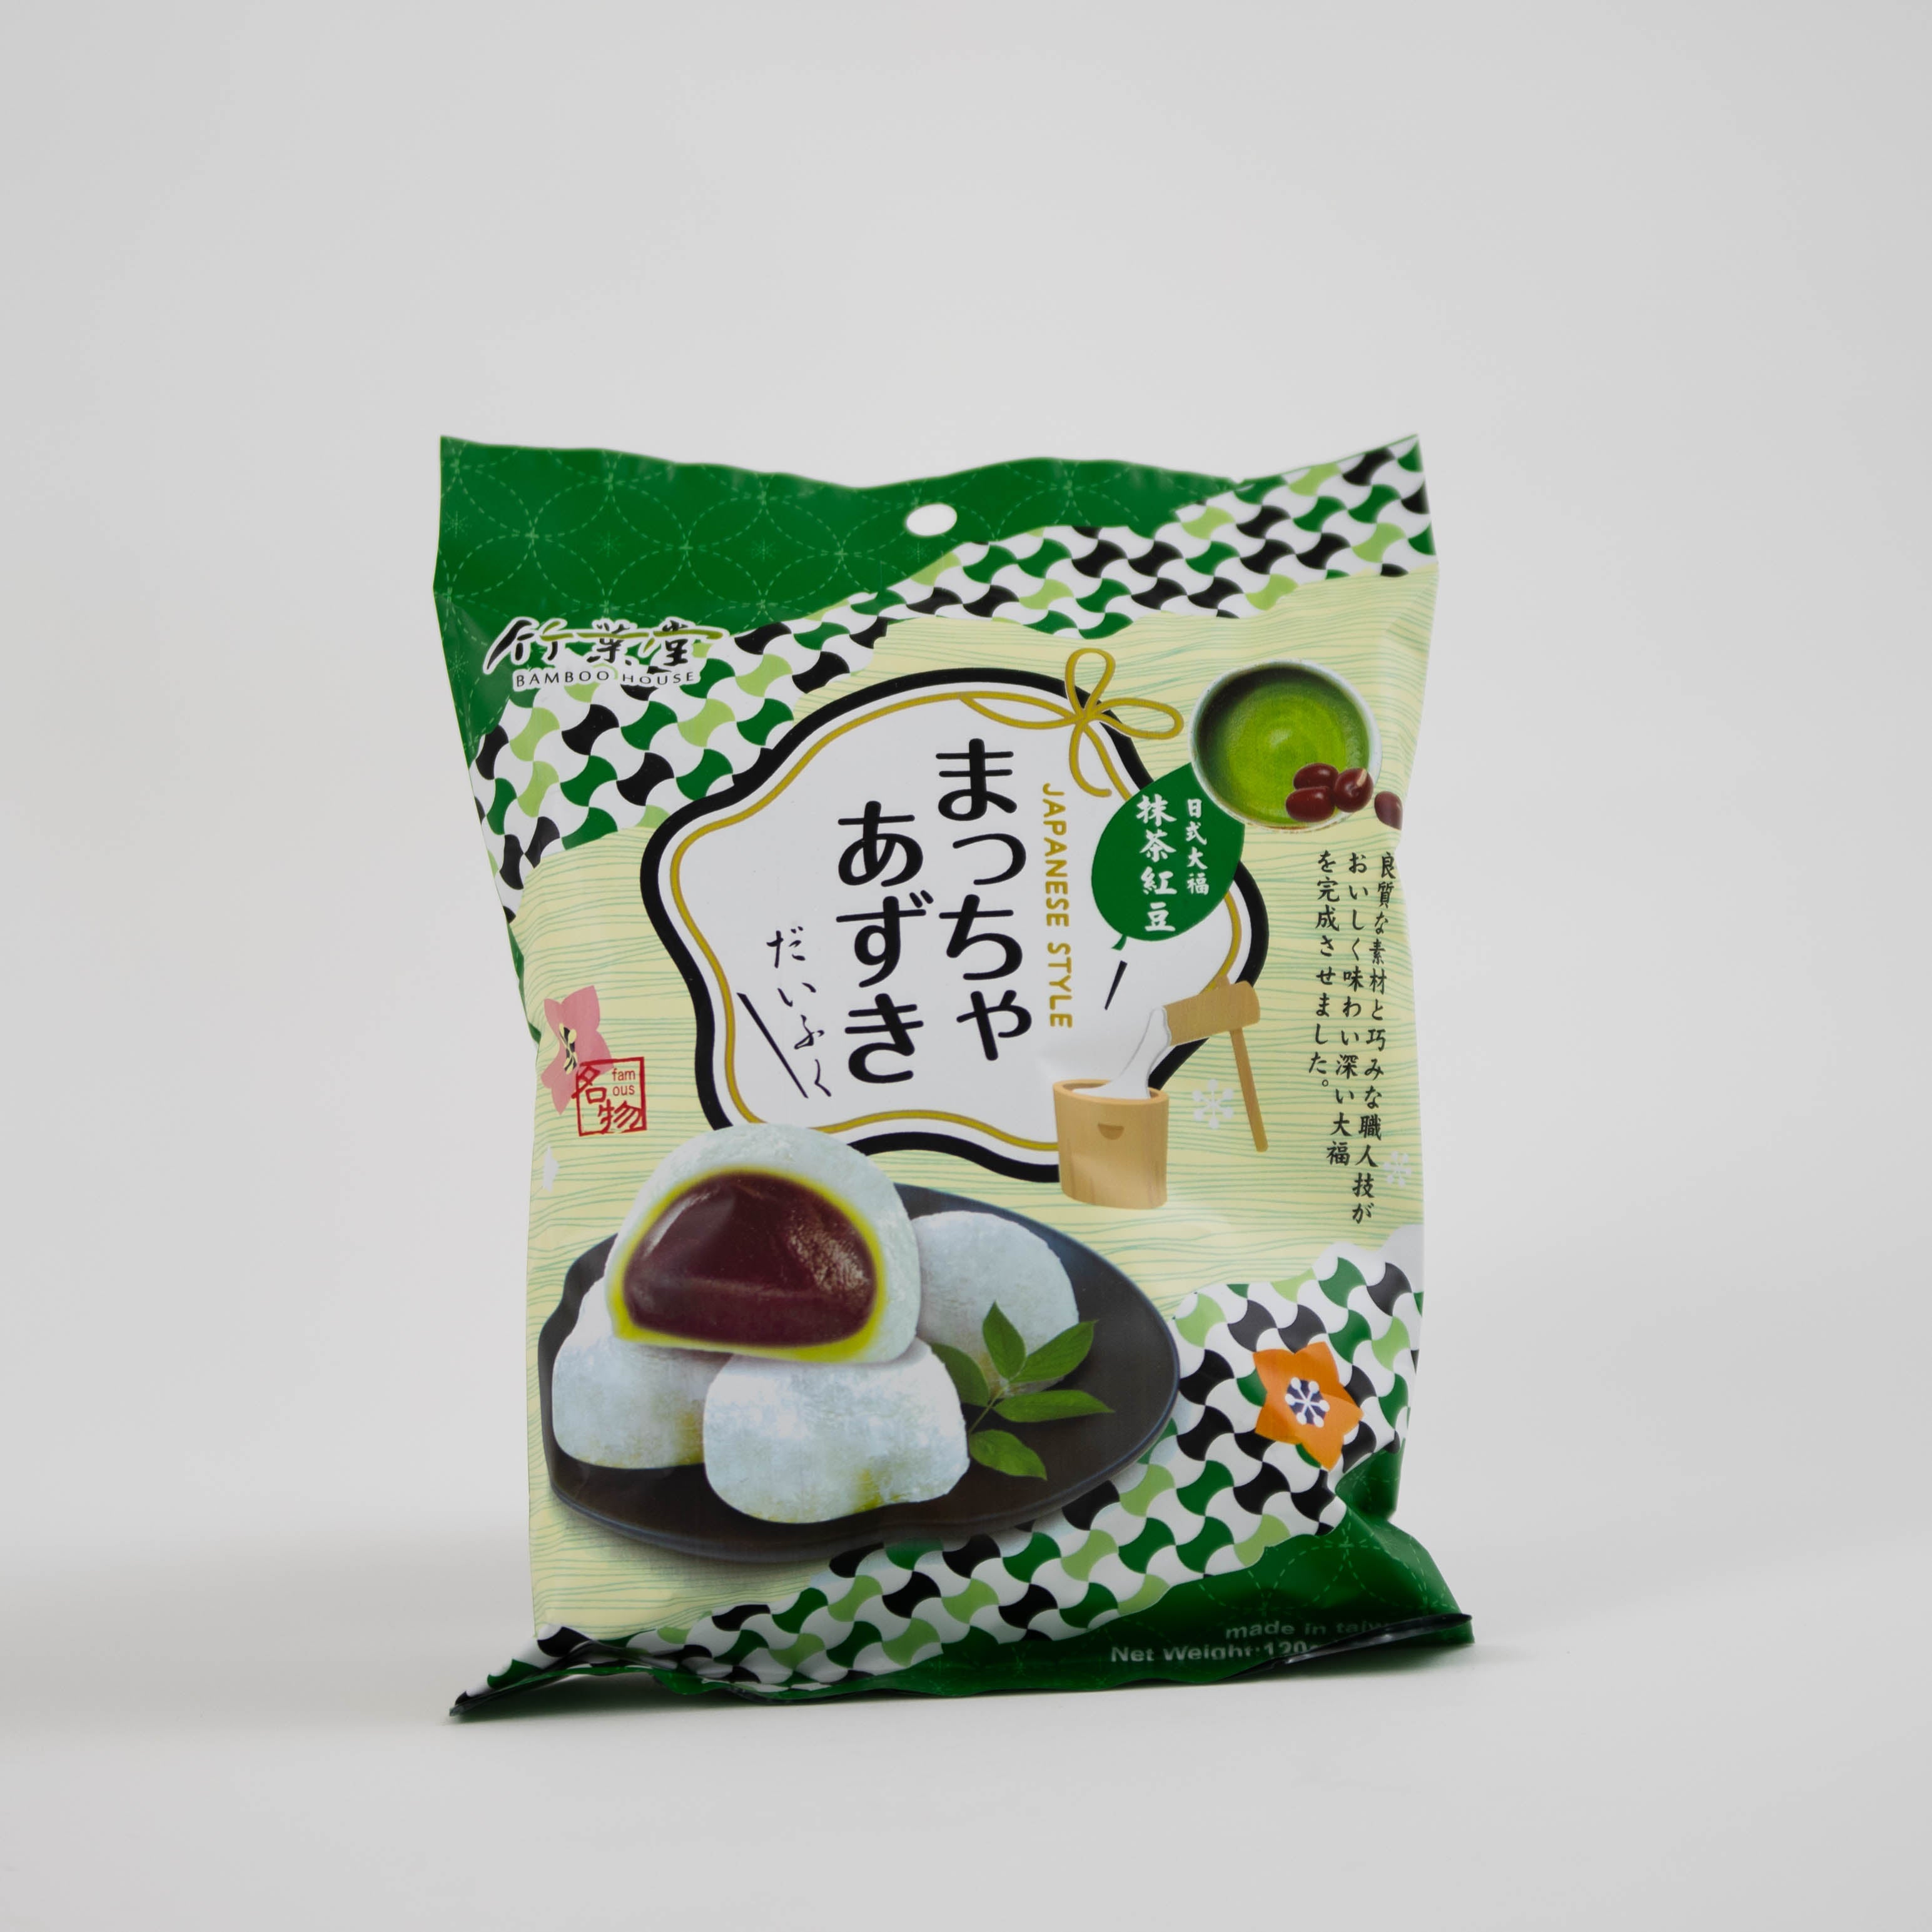 dinese asiashop onlineshop asiatische süßigkeiten lebensmittel bamboo house mochi matcha redbean 